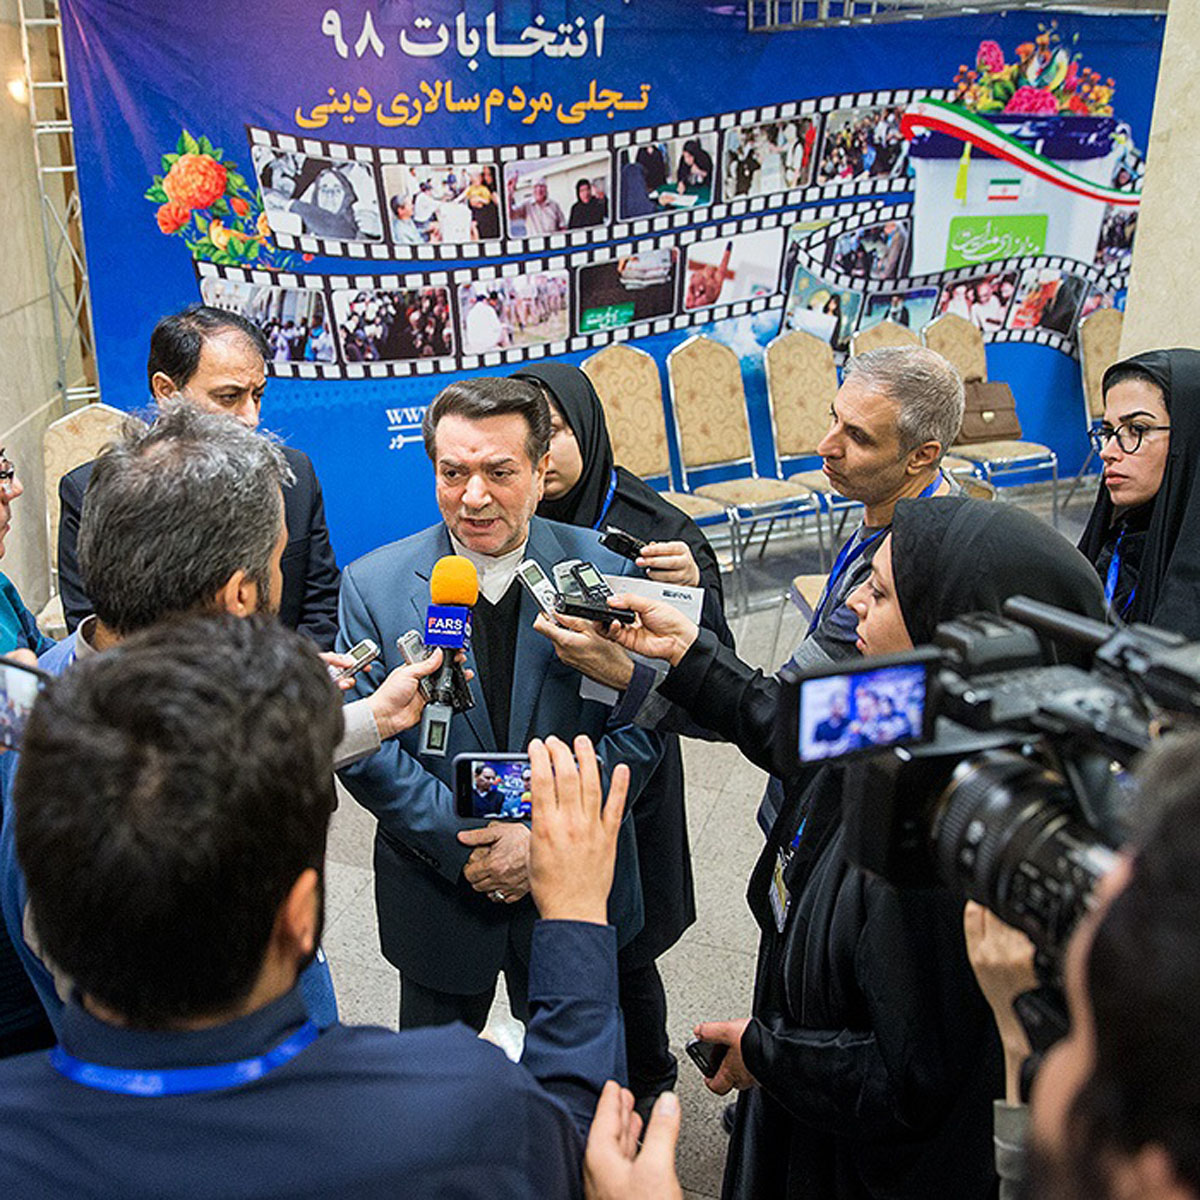 ثبت نام داوطلبان انتخابات مجلس در«تهران» | روز سوم 